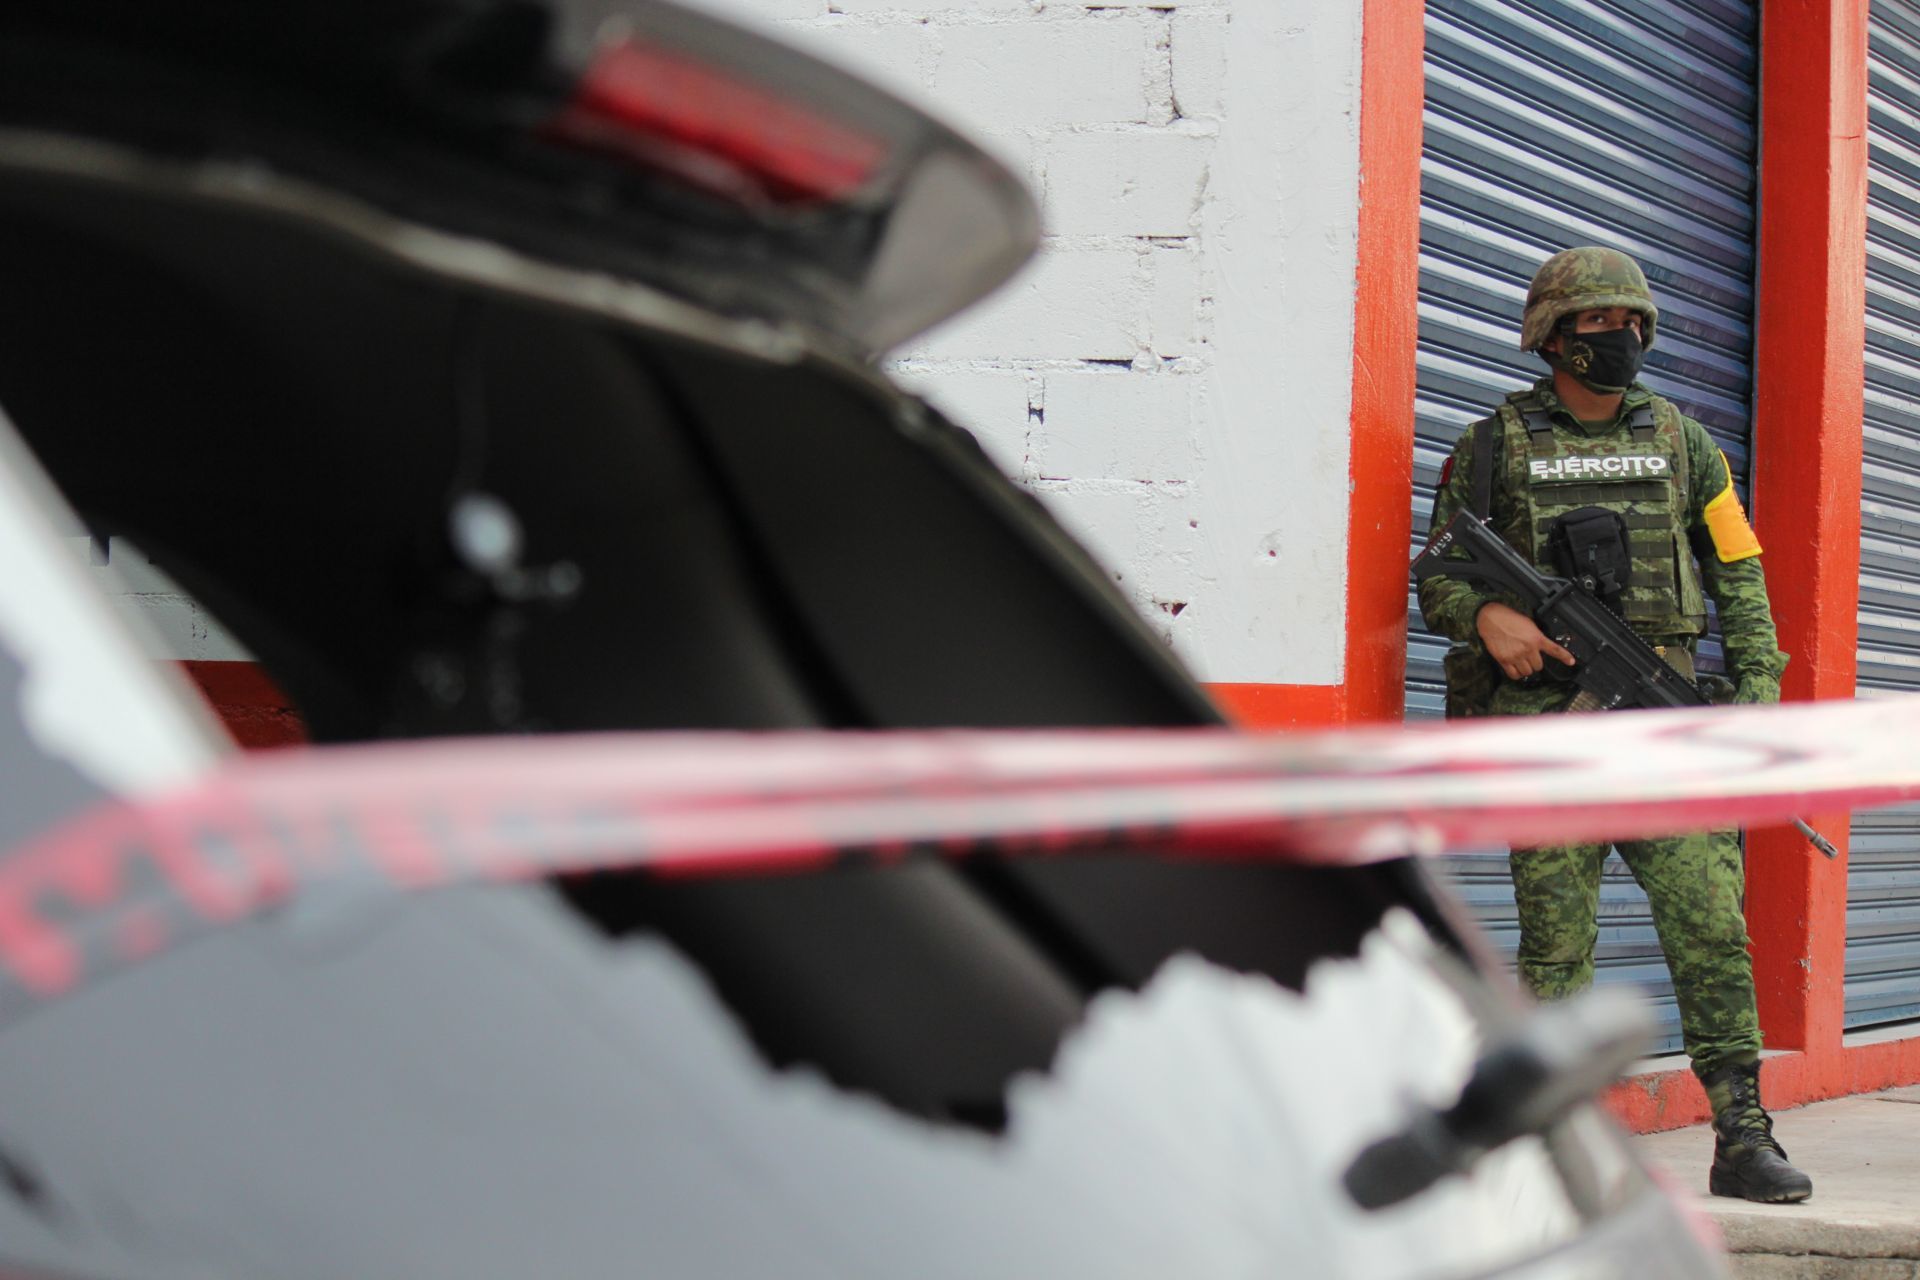 Hallan restos humanos sobre toldo de automóvil en Chilapa, Guerrero